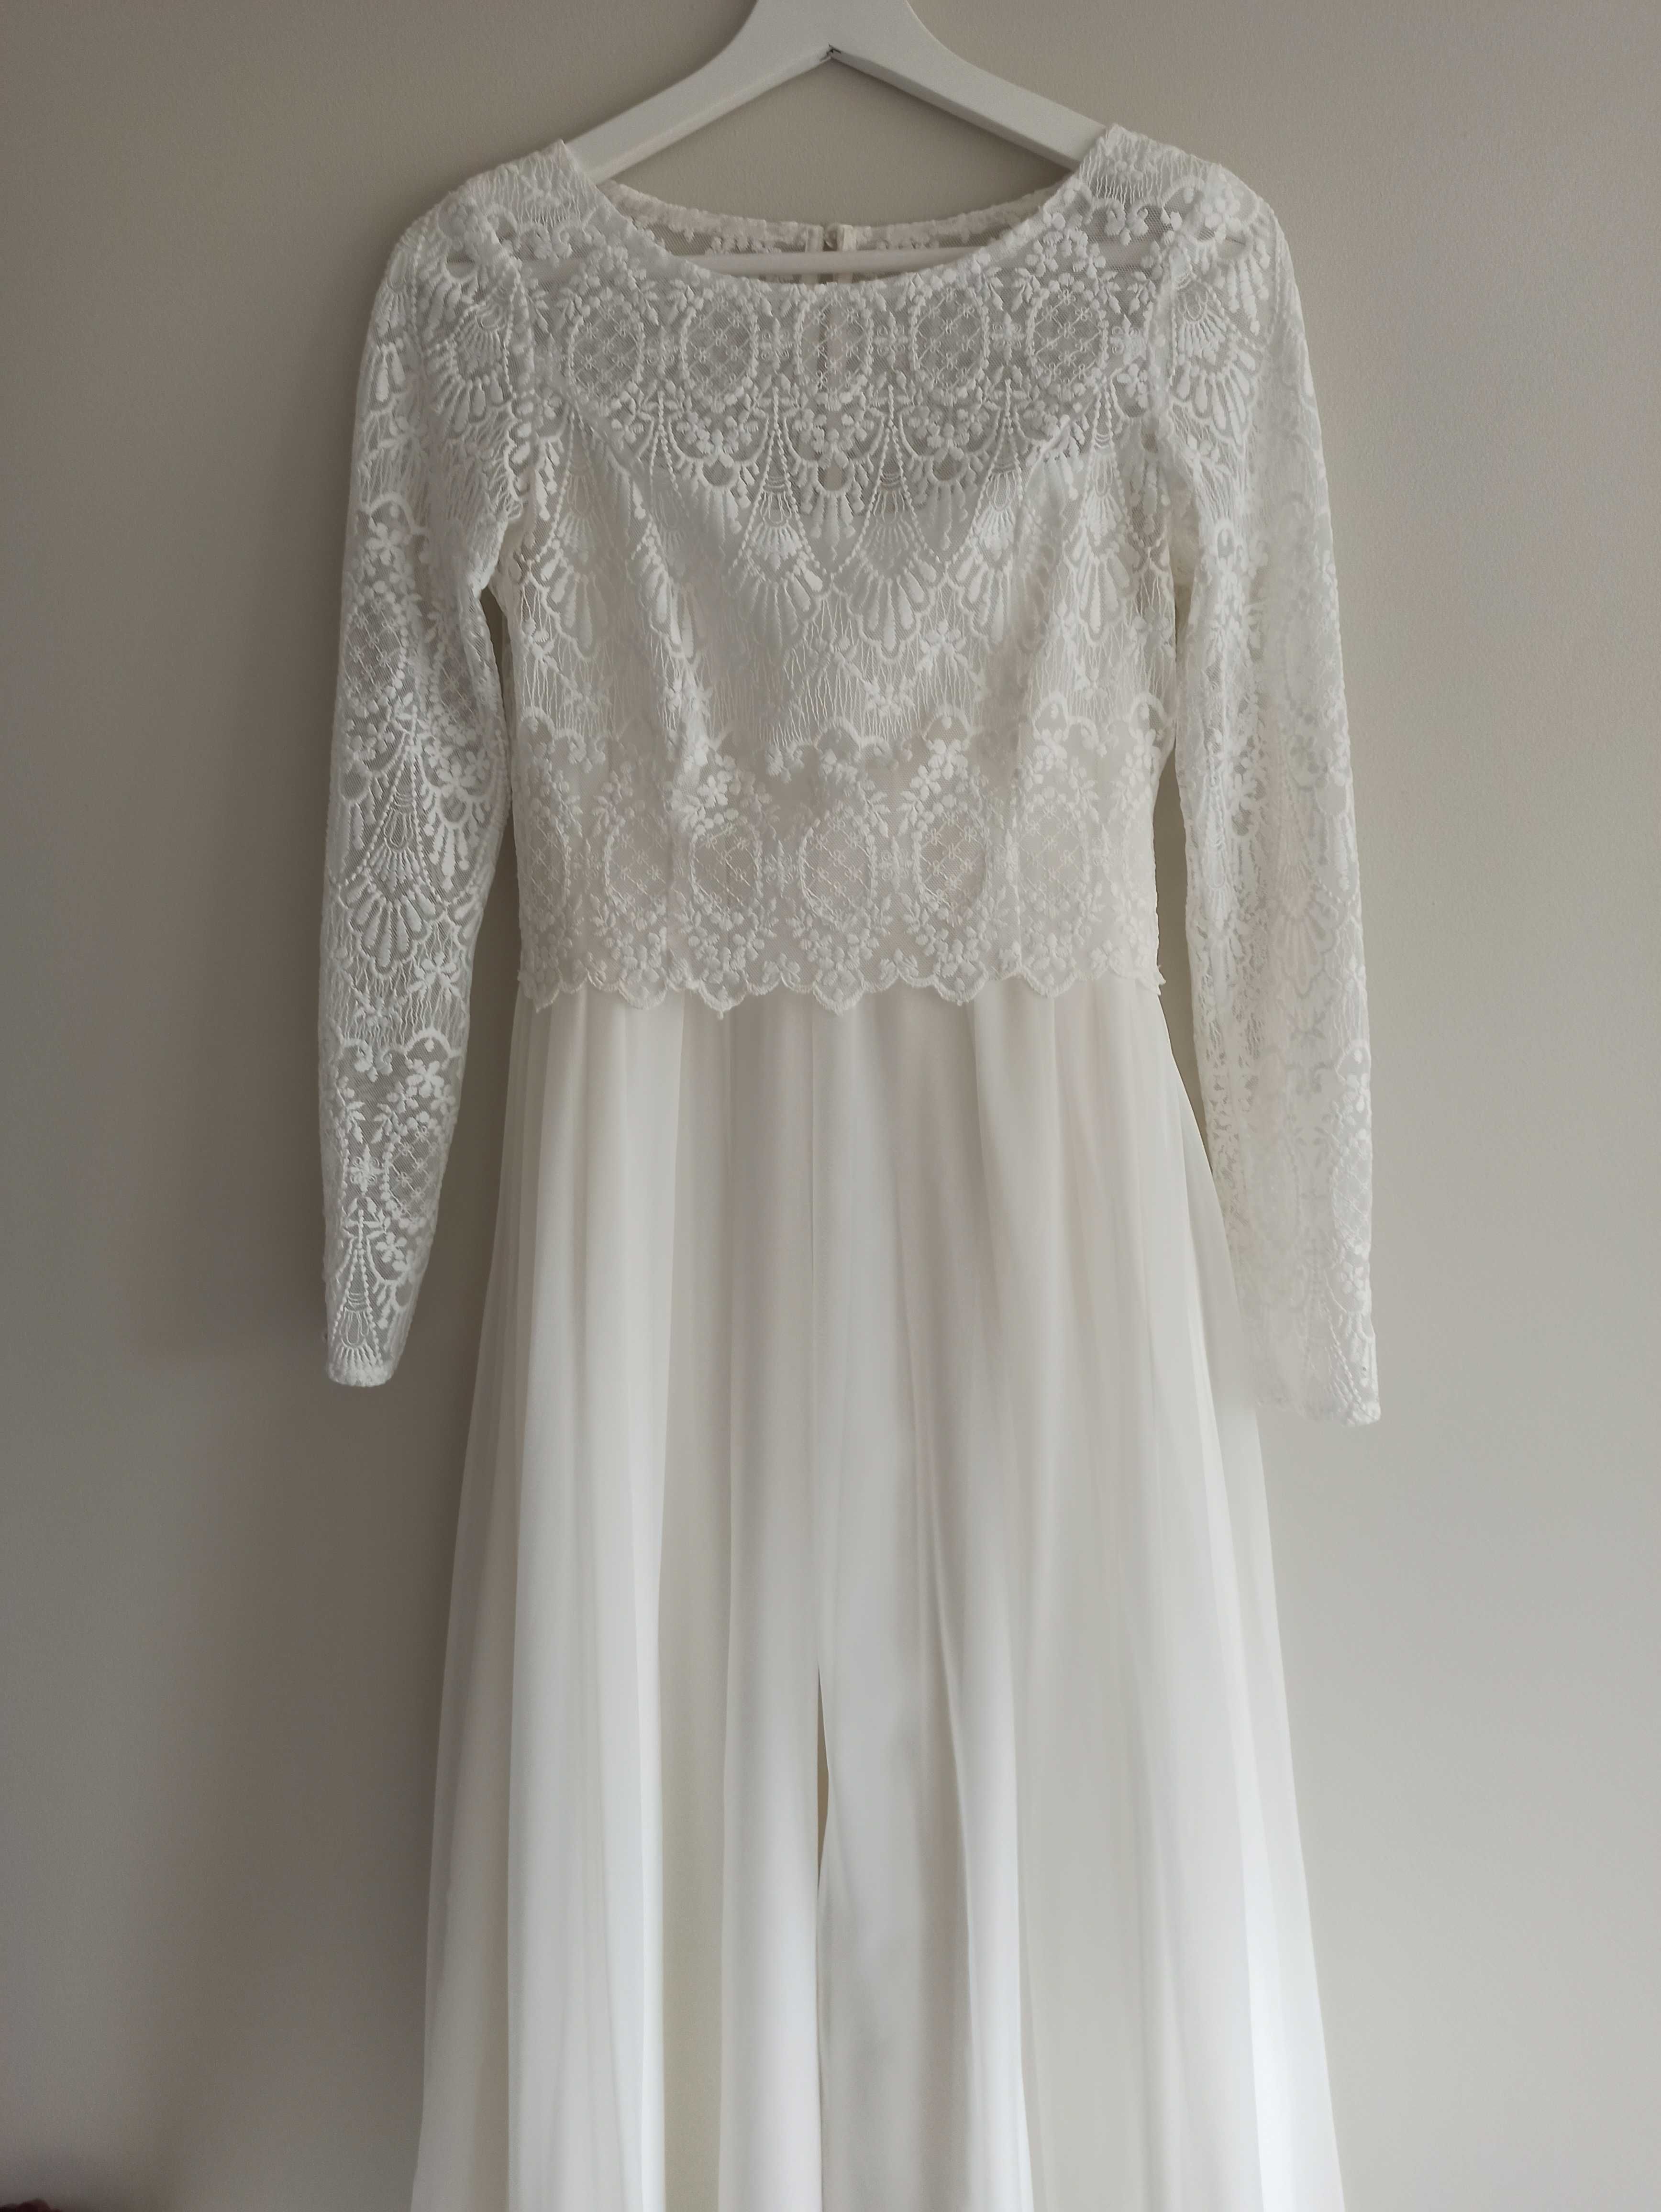 Dwuczęściowa klasyczna suknia ślubna, styl boho, firma MeLove